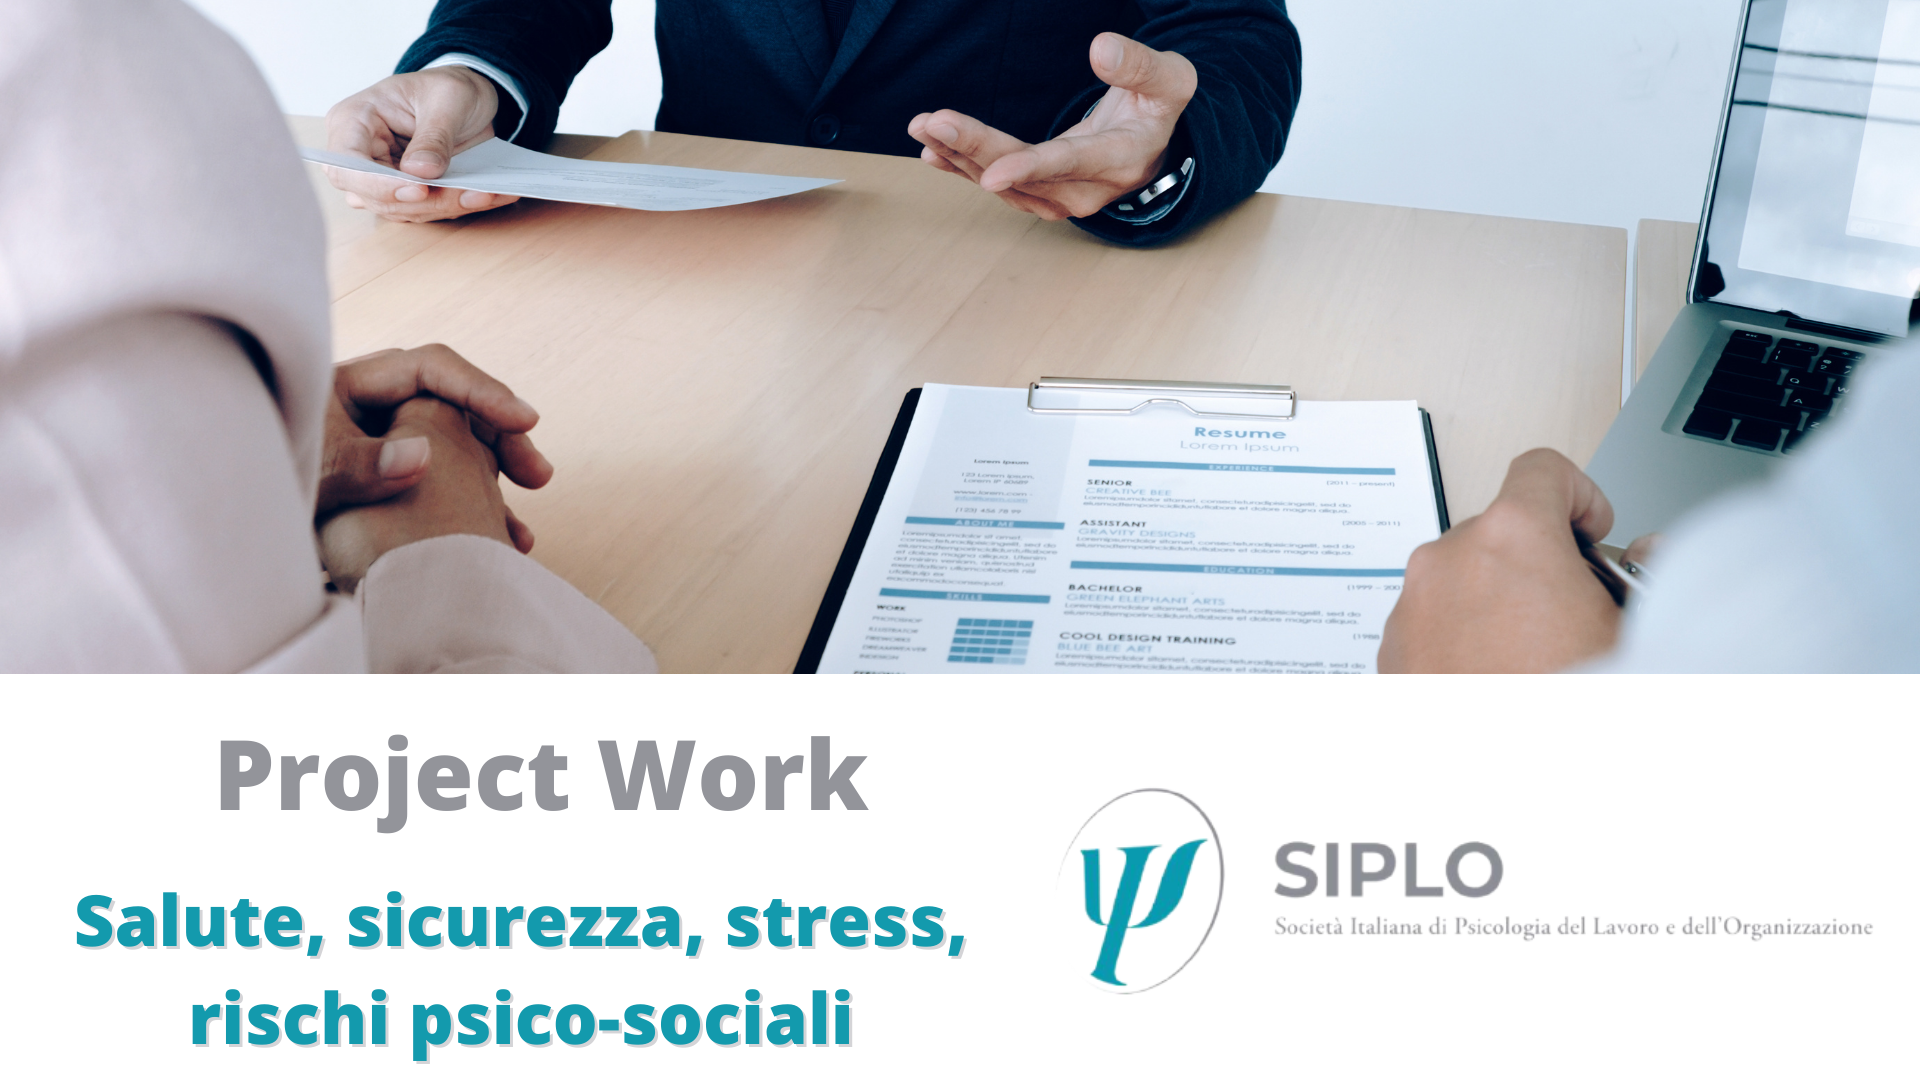 Al momento stai visualizzando L’idoneità psicologica e il rientro al lavoro, entriamo nel merito di un Project Work SIPLO.